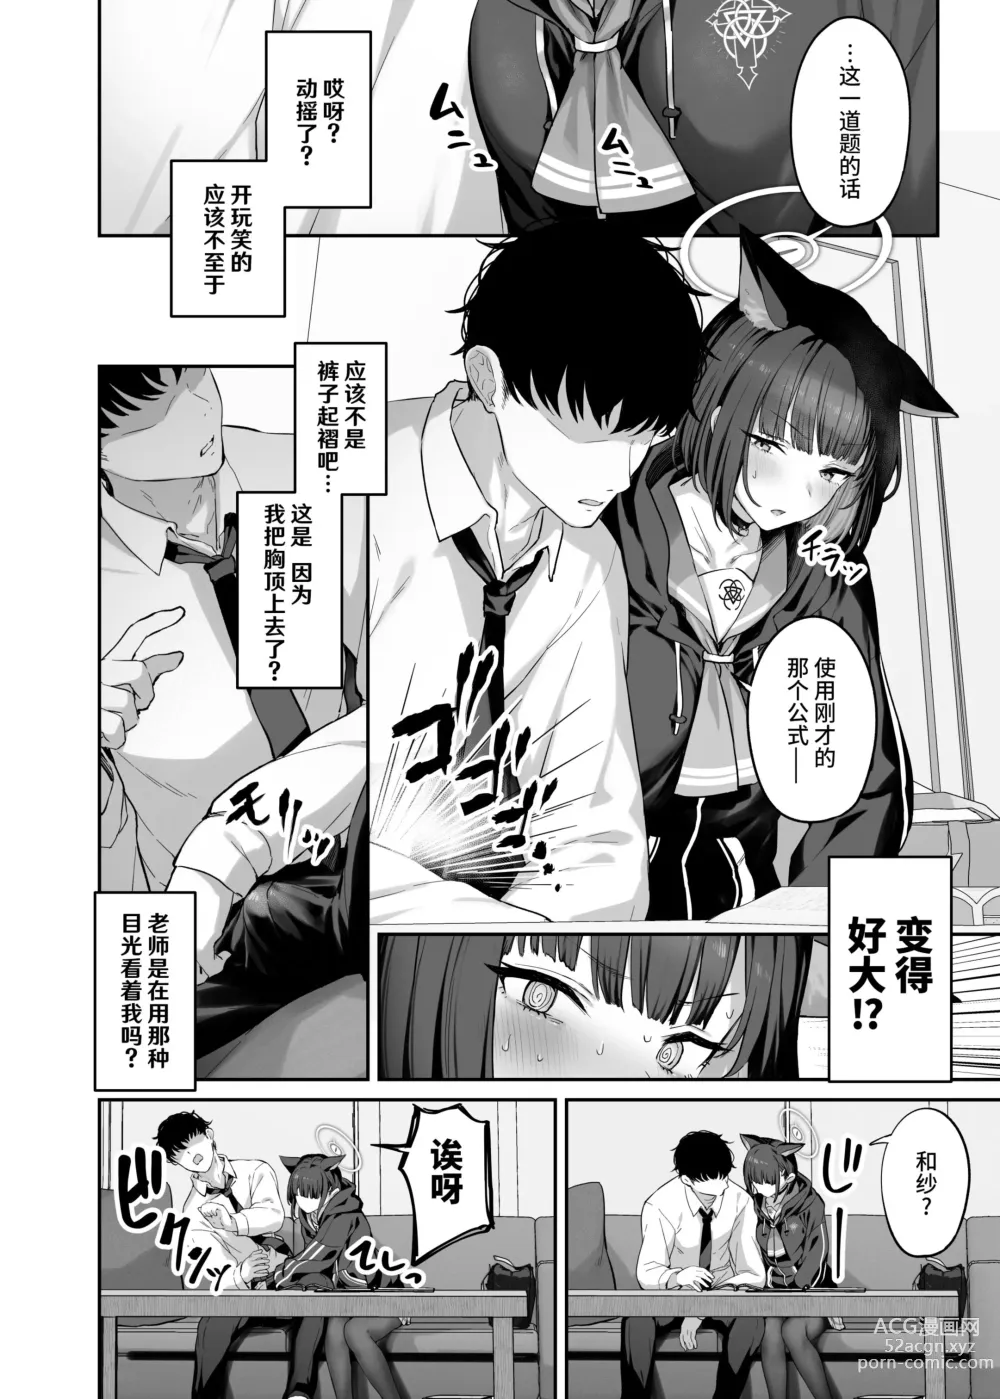 Page 5 of doujinshi Kyouyama Kazusa Shinkyoku1